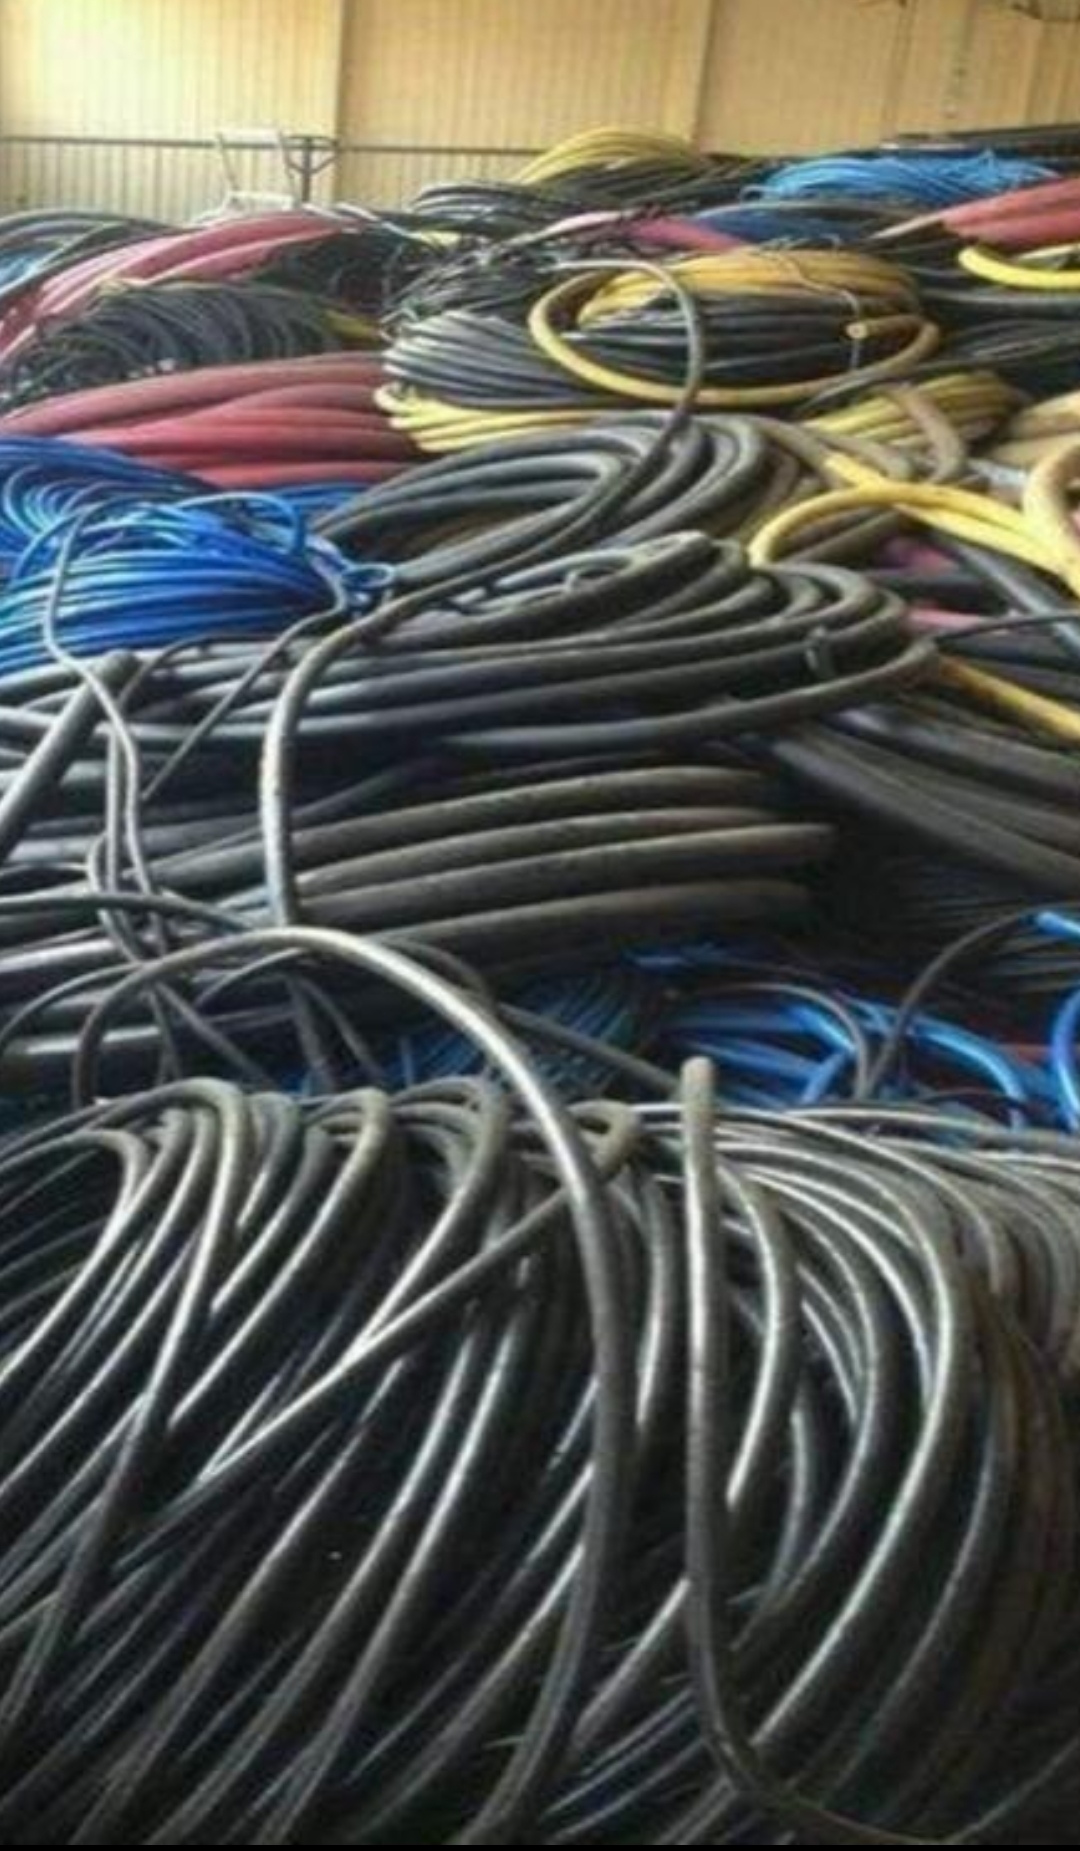 回收废旧电缆